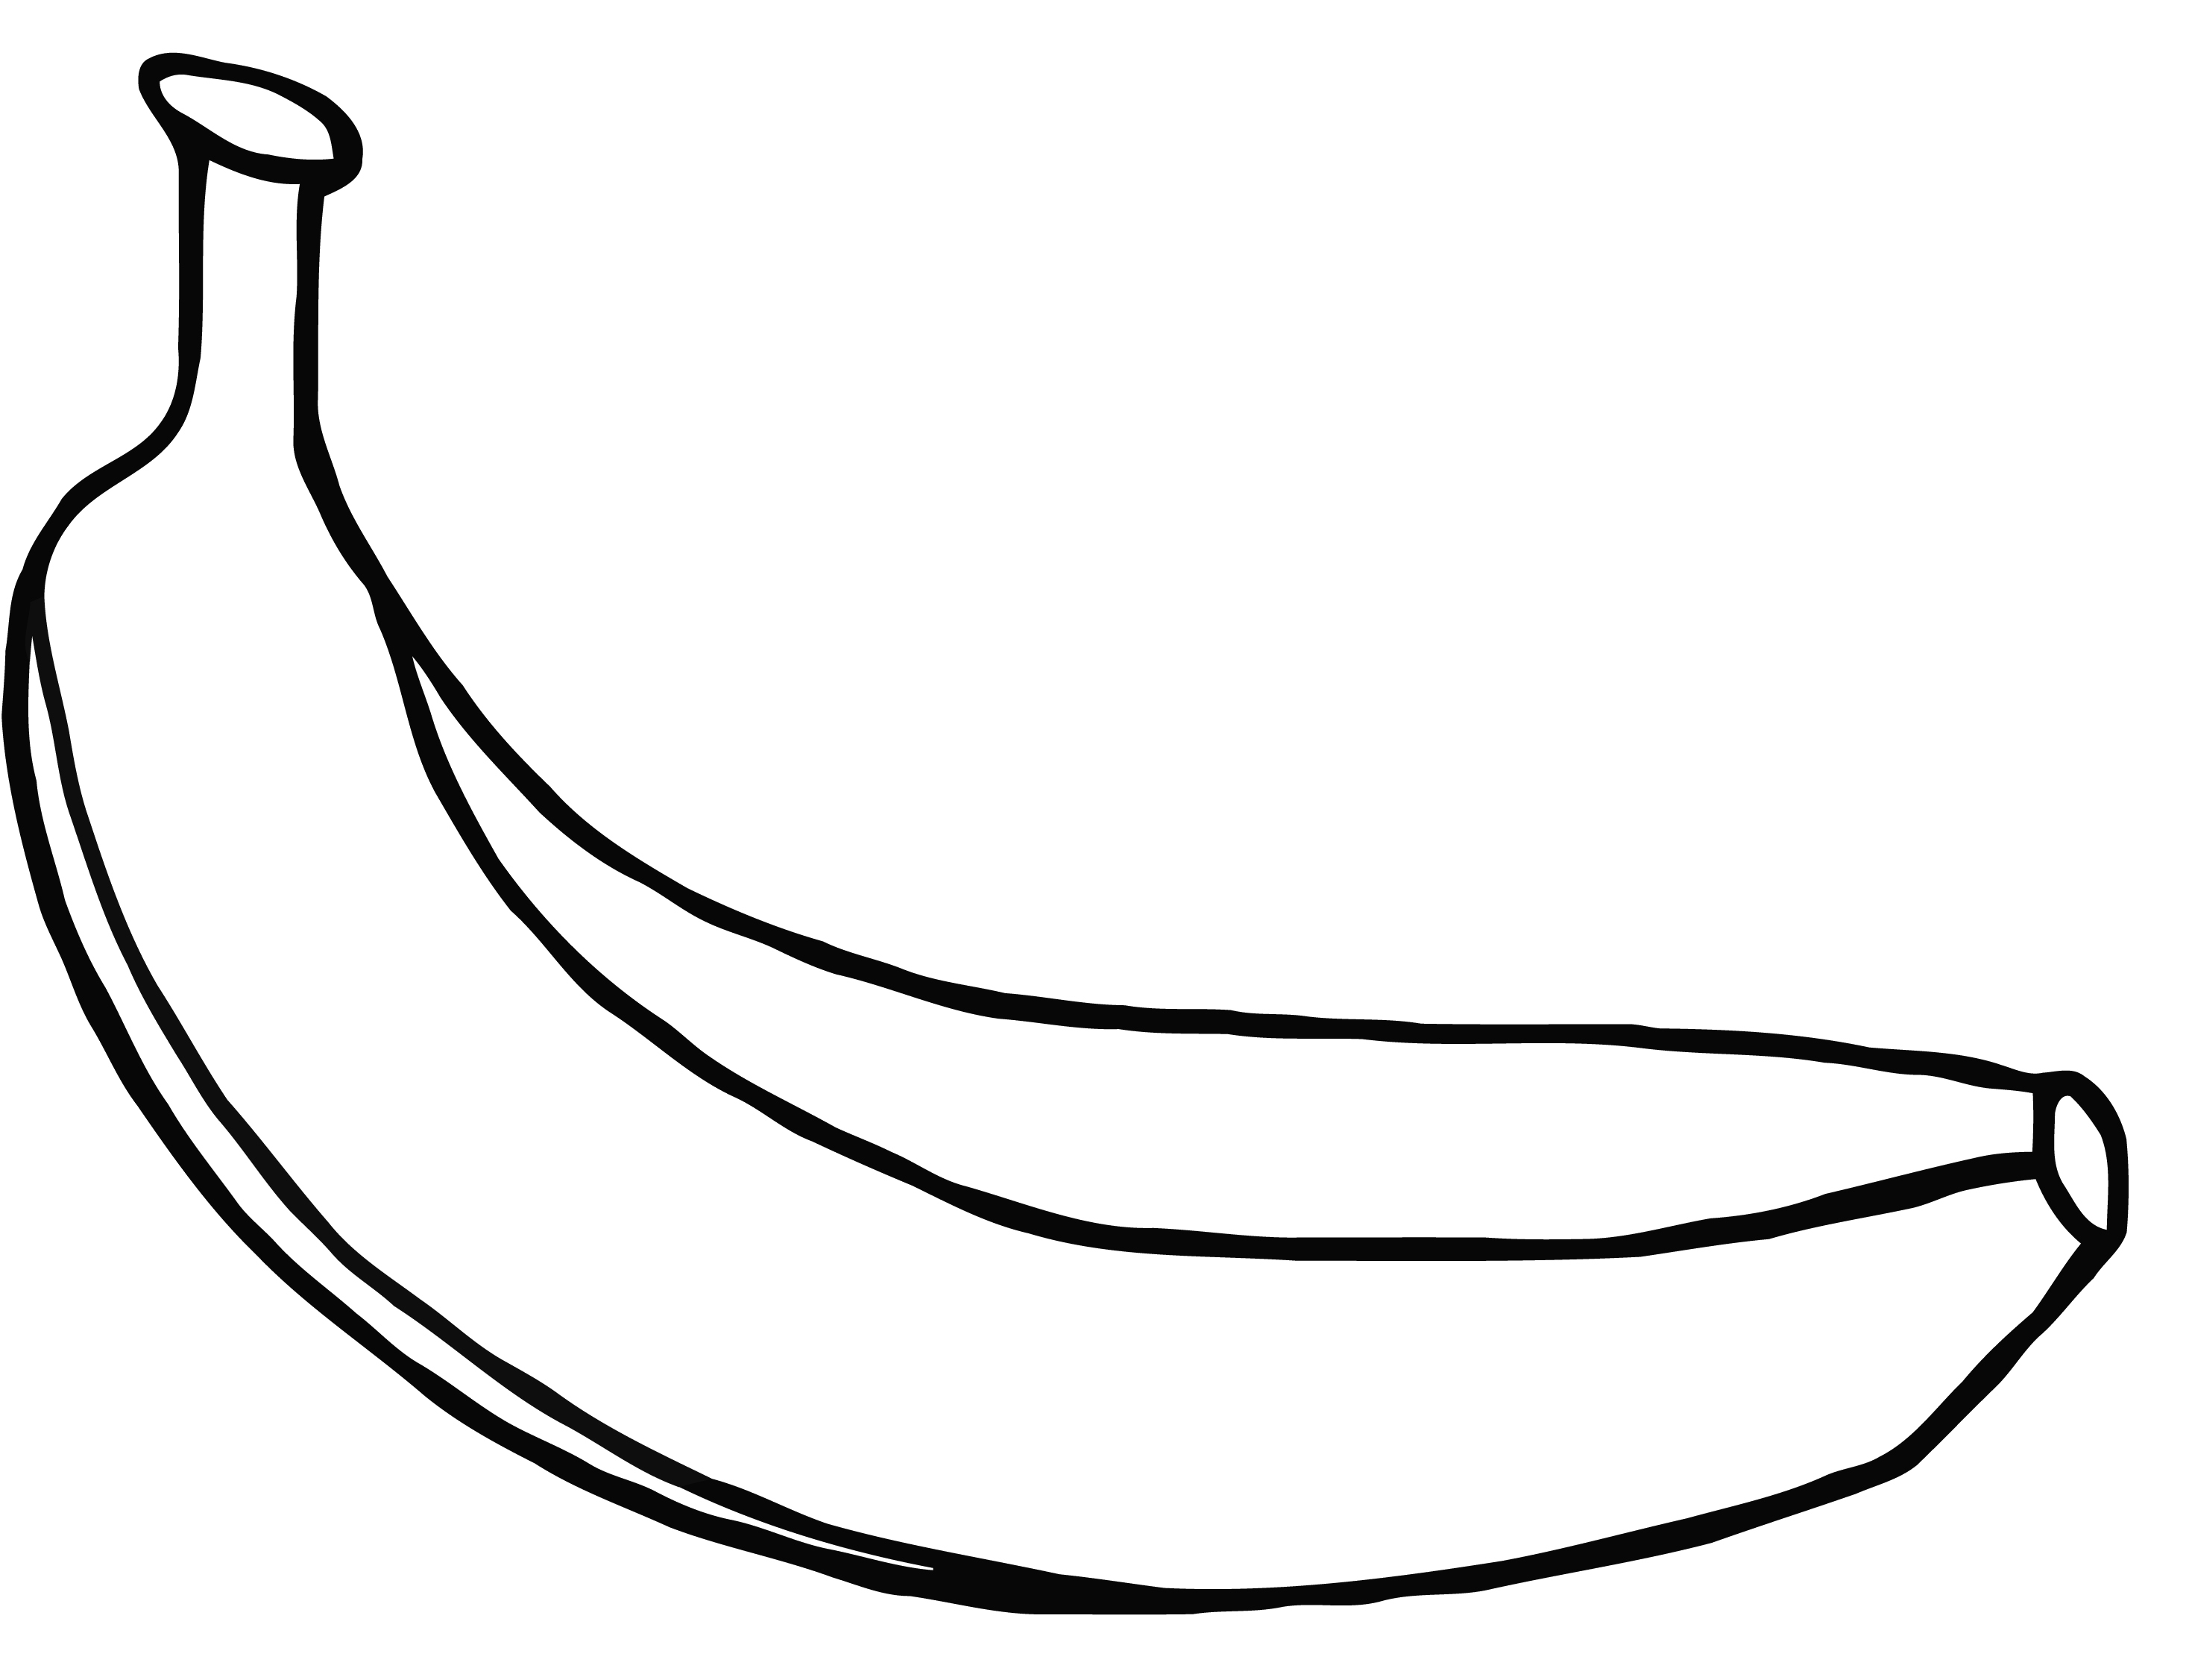 Peeled Banana Drawing